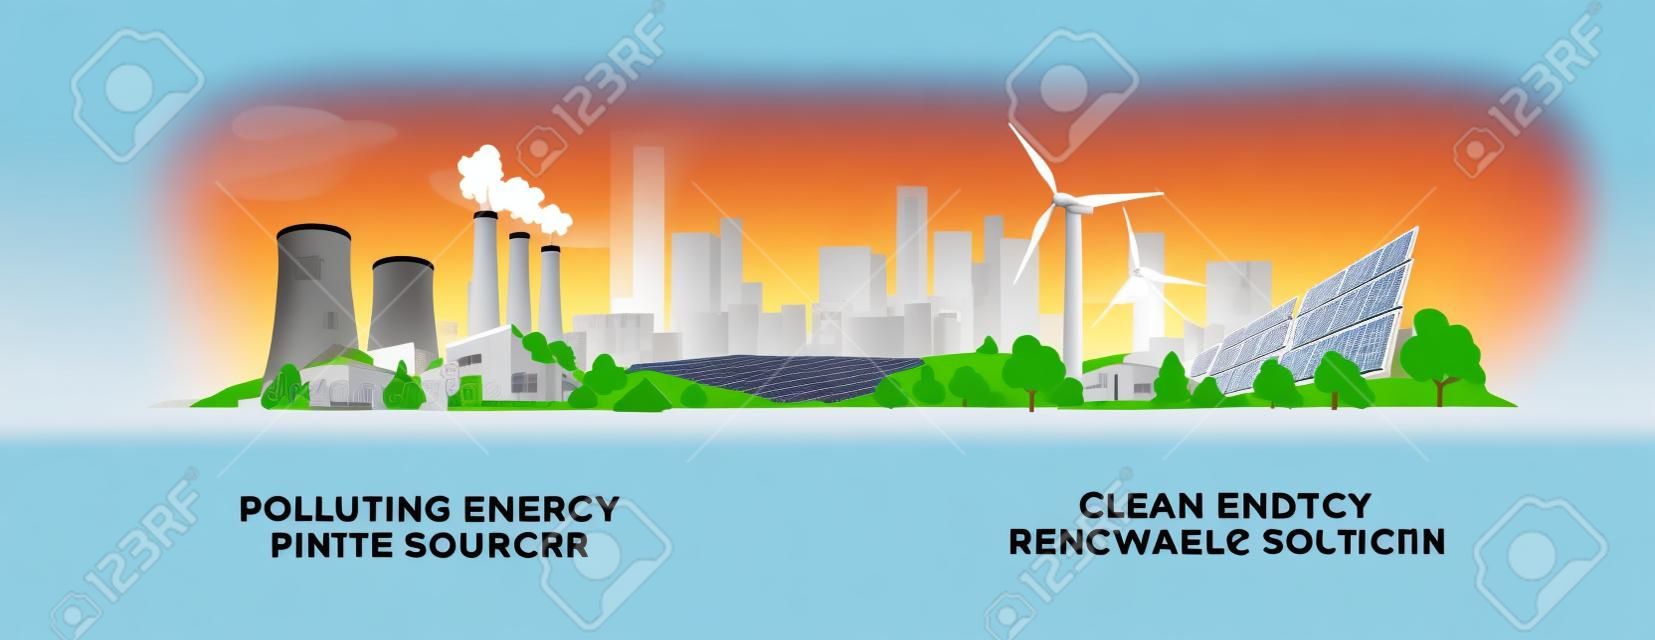 矢量圖顯示清潔和污染的發電生產。與化石動力煤和核電廠相比，清潔的太陽能電池板和風力渦輪機污染可再生能源。